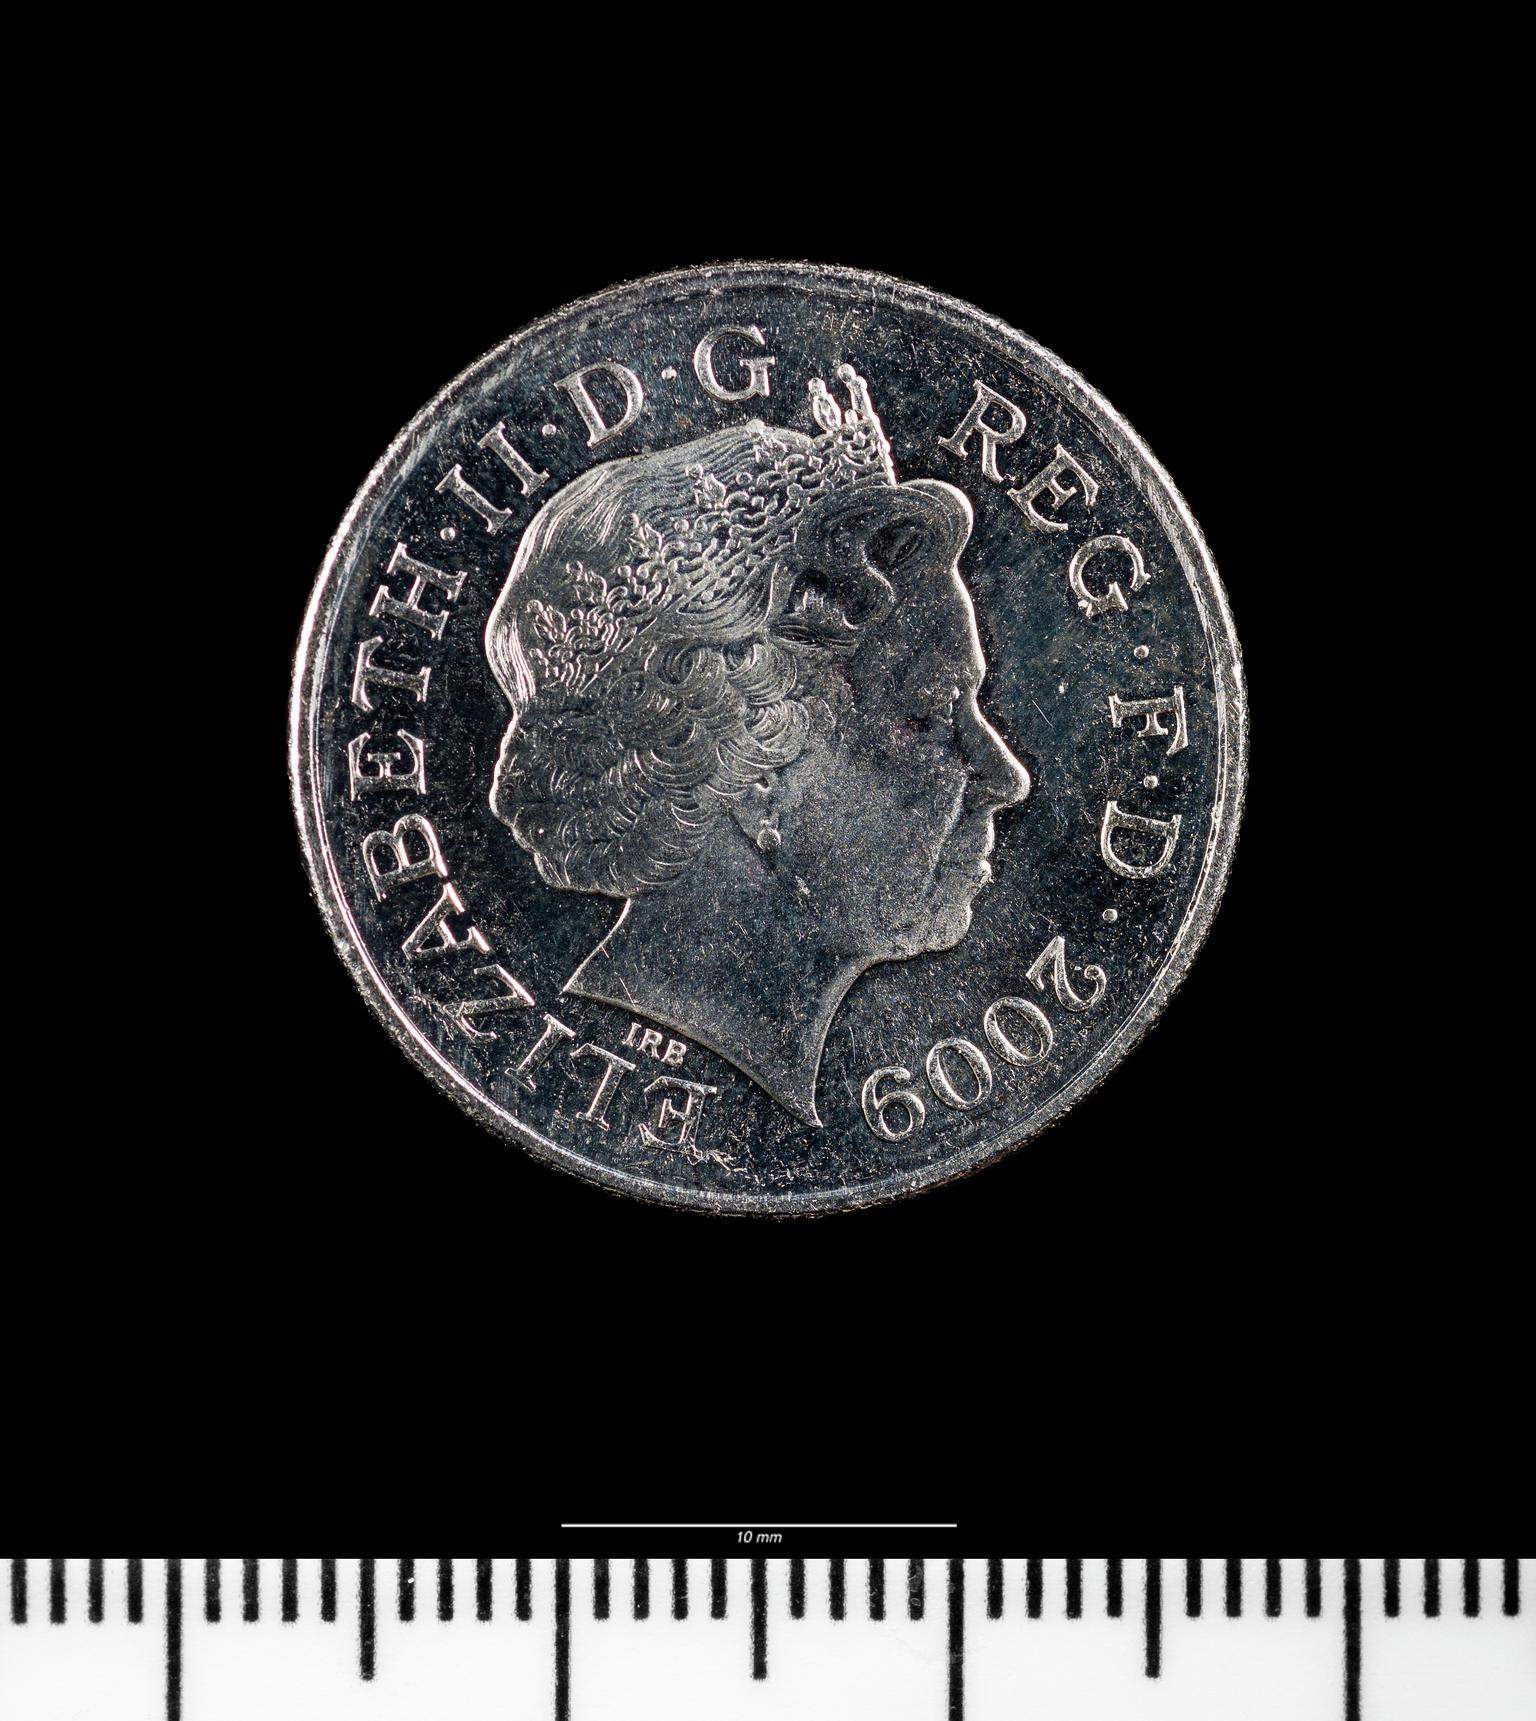 Elizabeth II ten pence